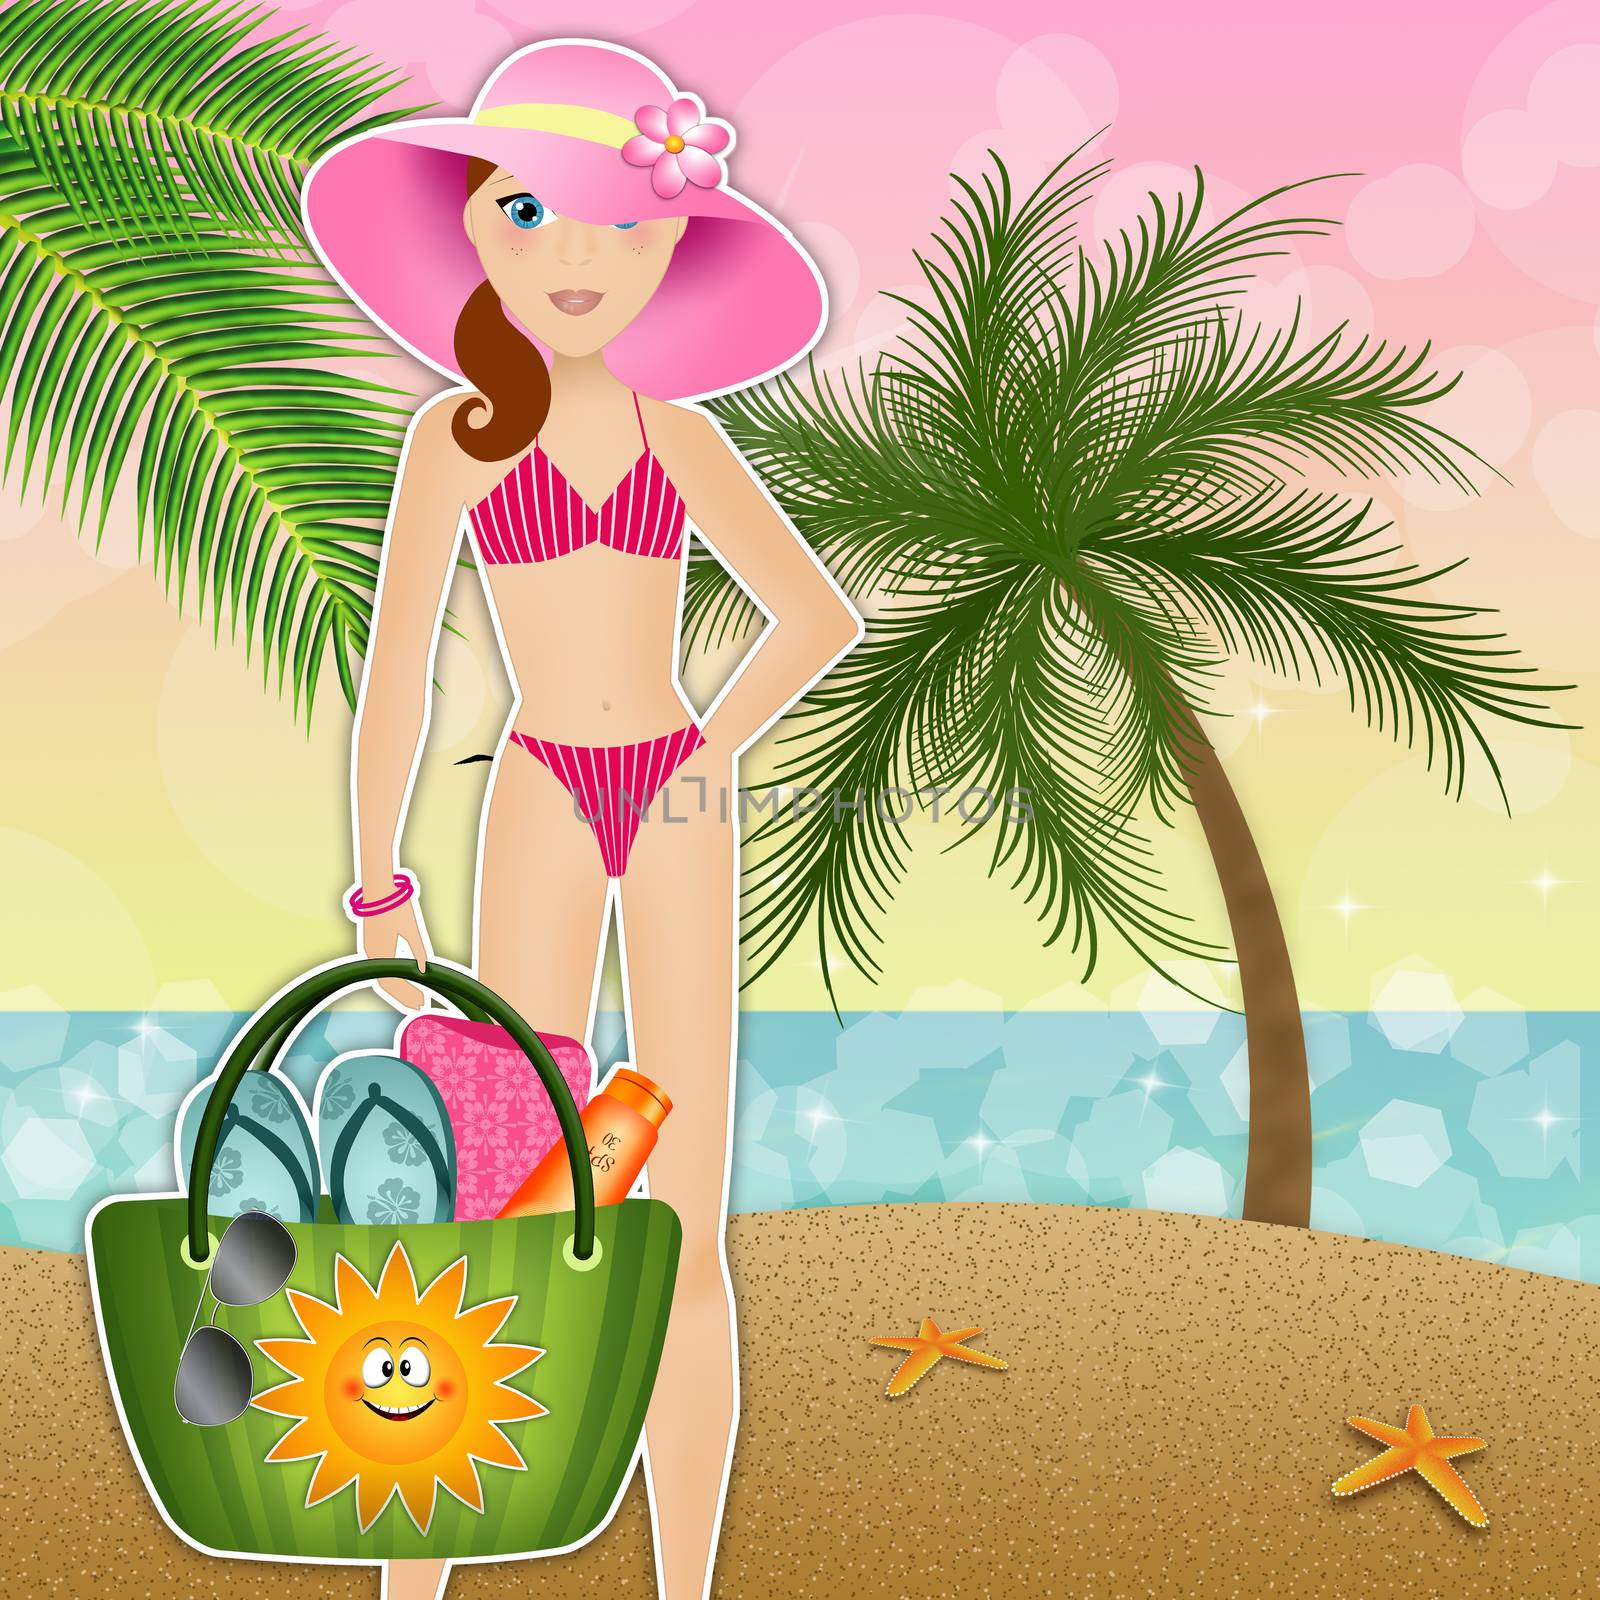 Woman with beach bag on the beach